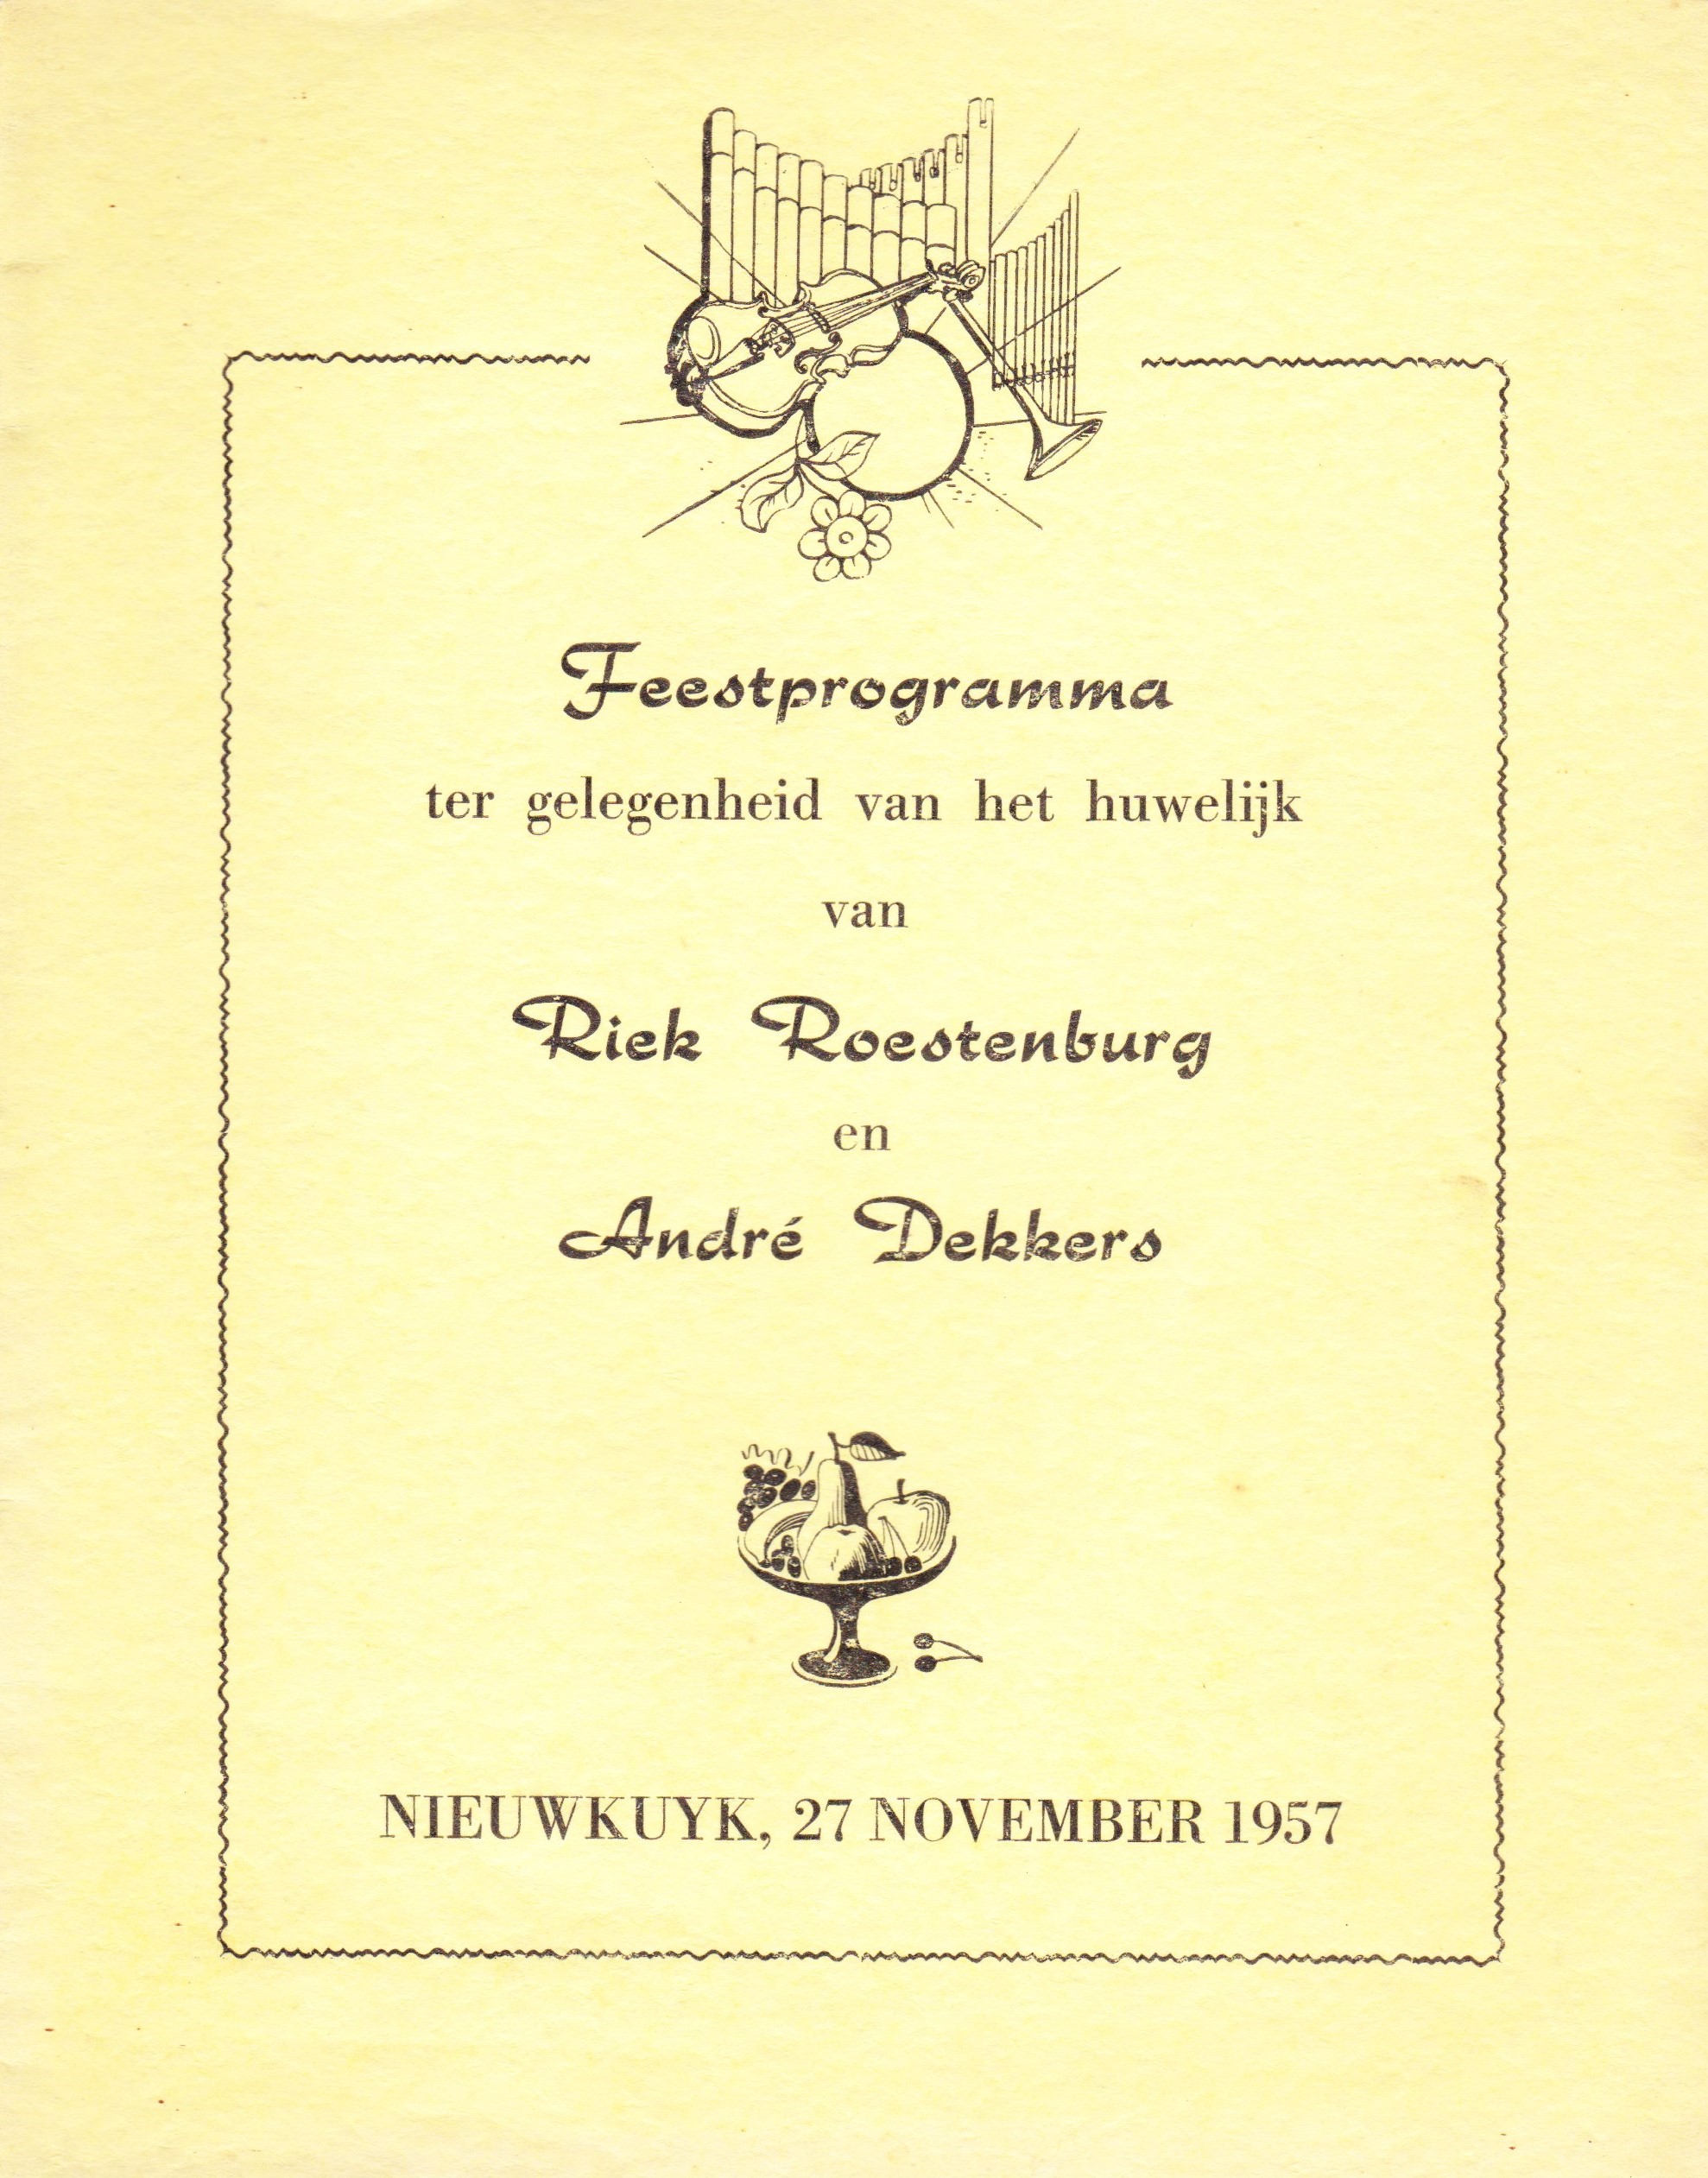 dekkers_andré__en_riek_roestenburg_treden_in_het_huwelijk_op_27_november_1957_in_nieuwkuyk__feestprogramma.jpeg